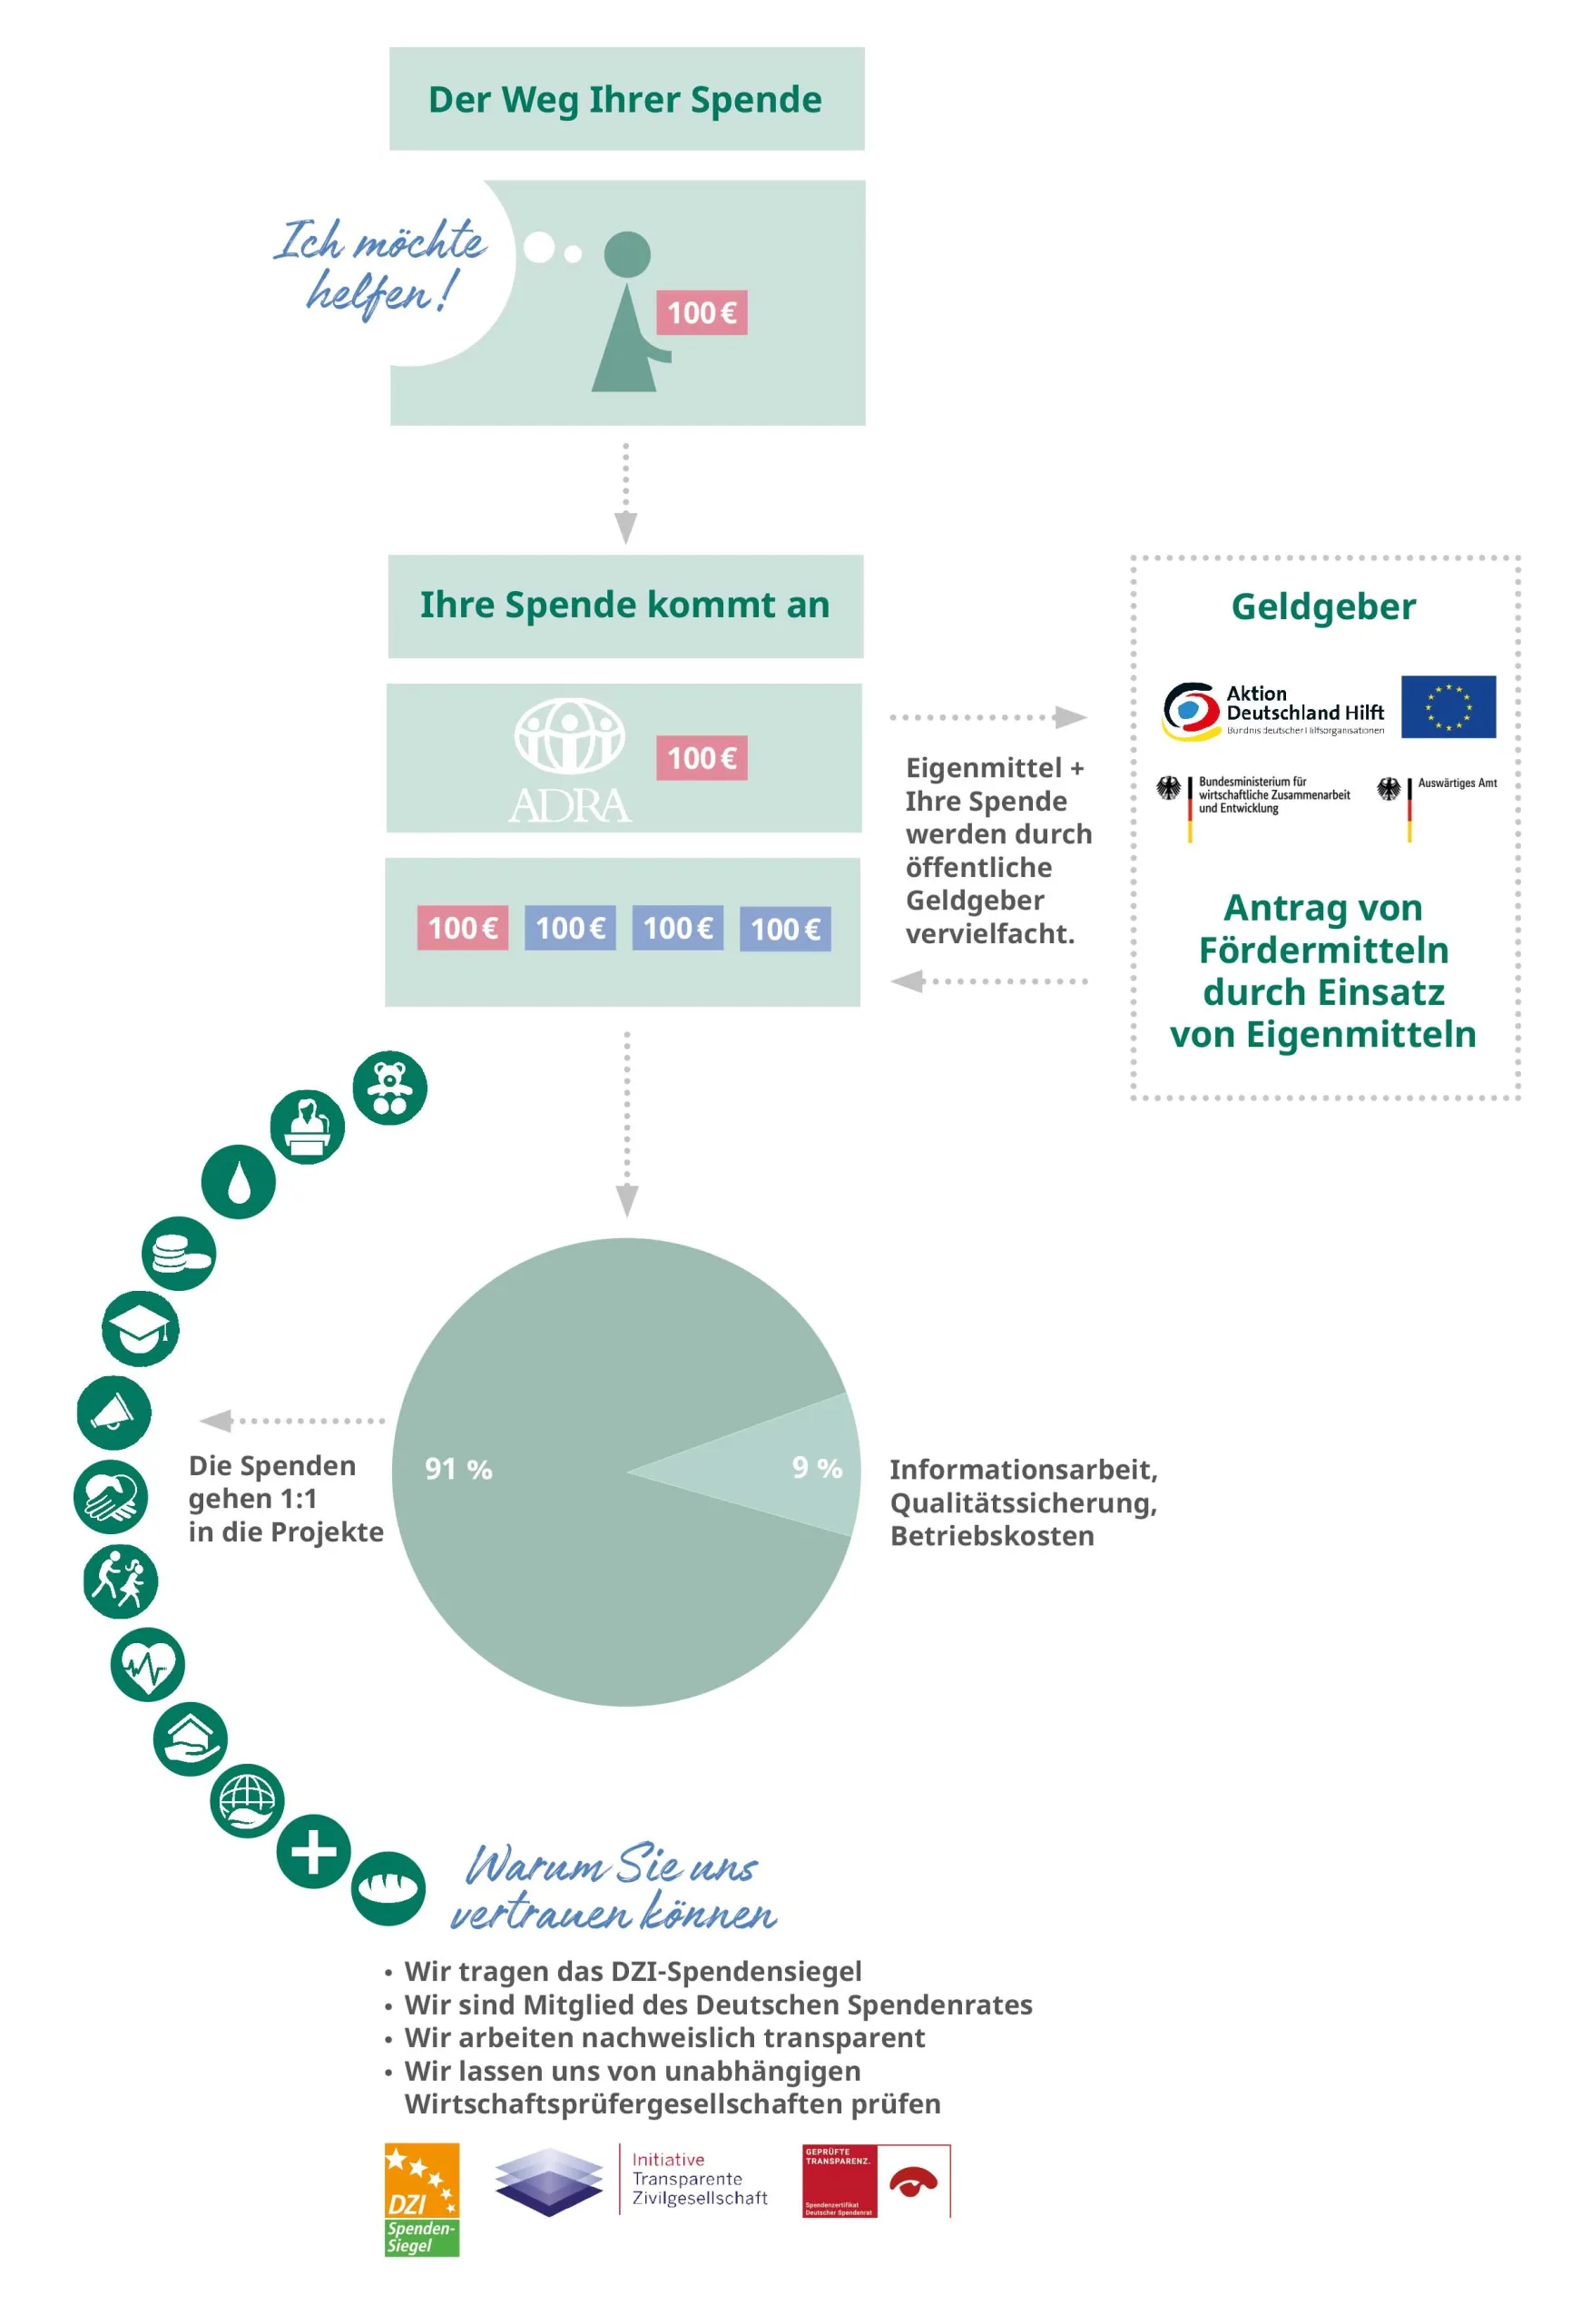 Infografik: Der Weg Ihrer Spende - ADRA erklärt transparent den Weg und die Auswirkungen Ihrer Unterstützung